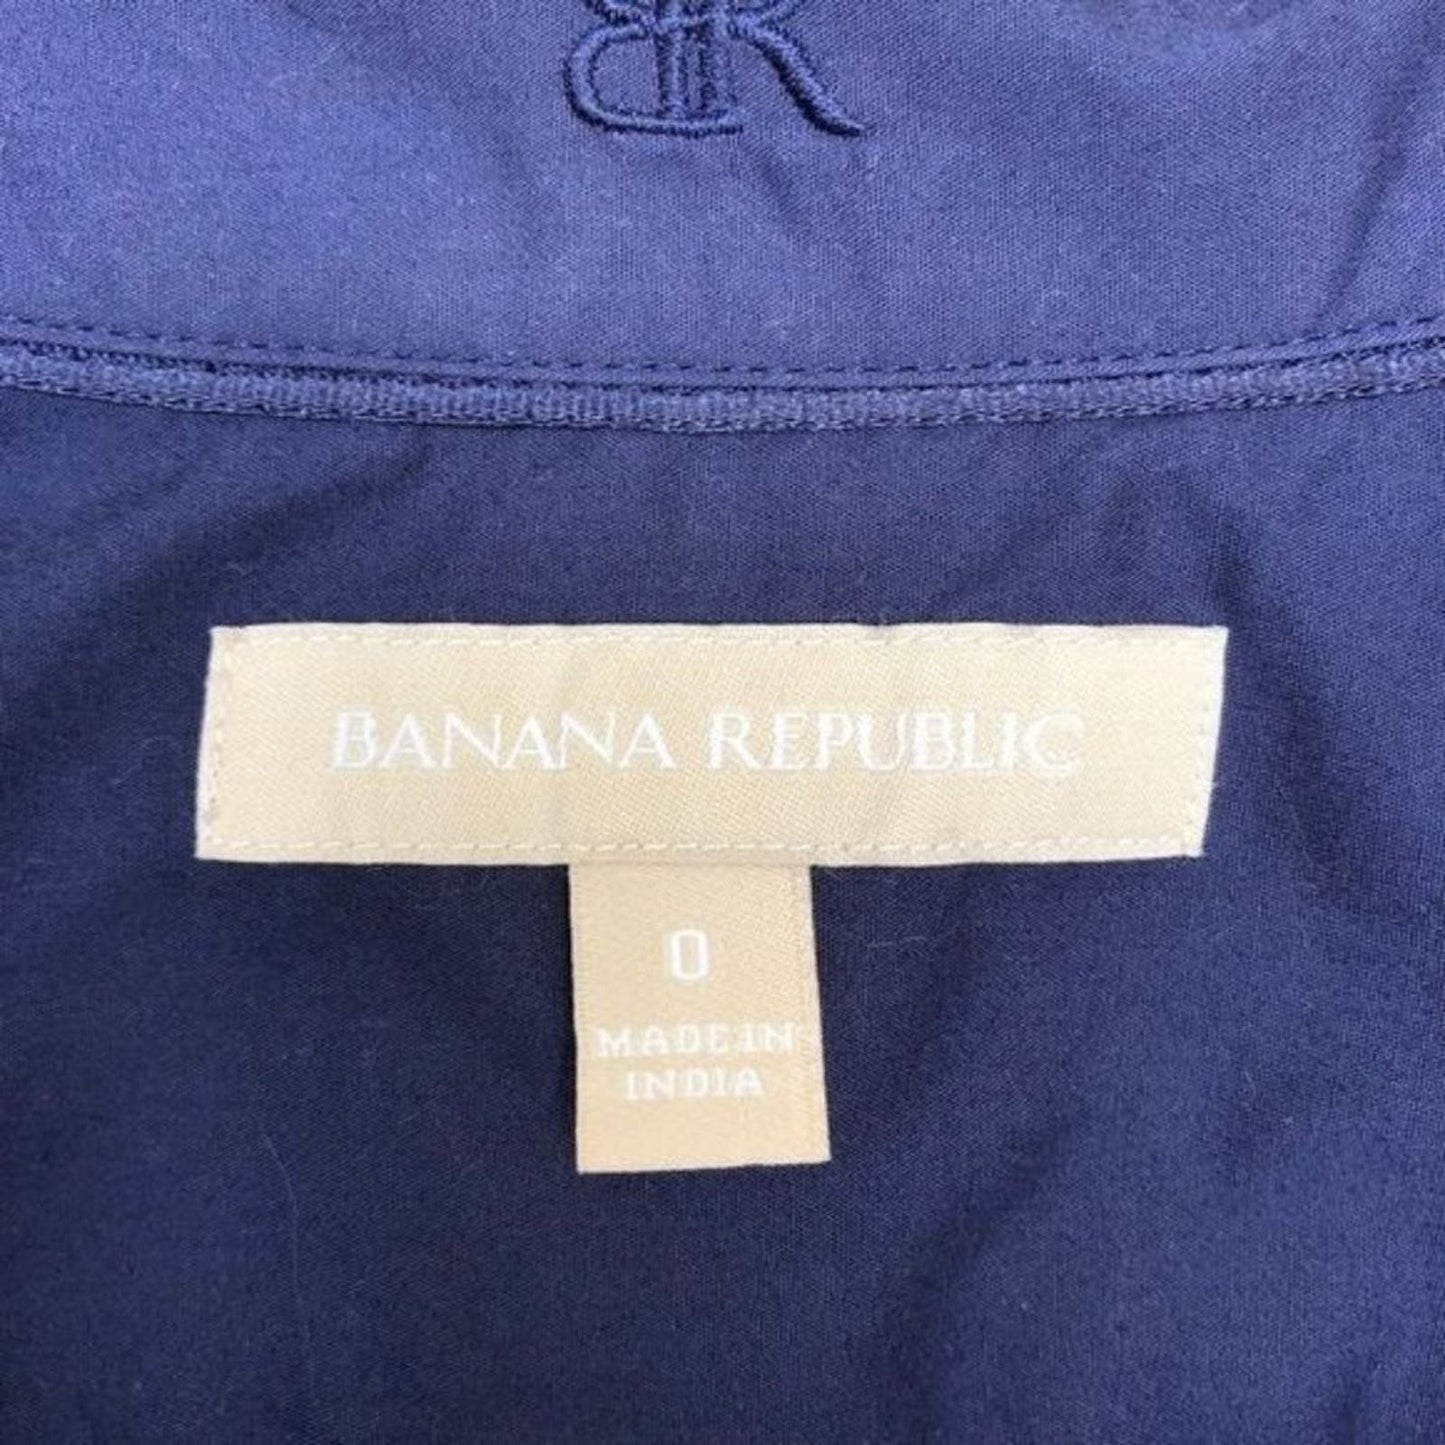 Banana Republic sz 0 navy cotton button shirt blouse